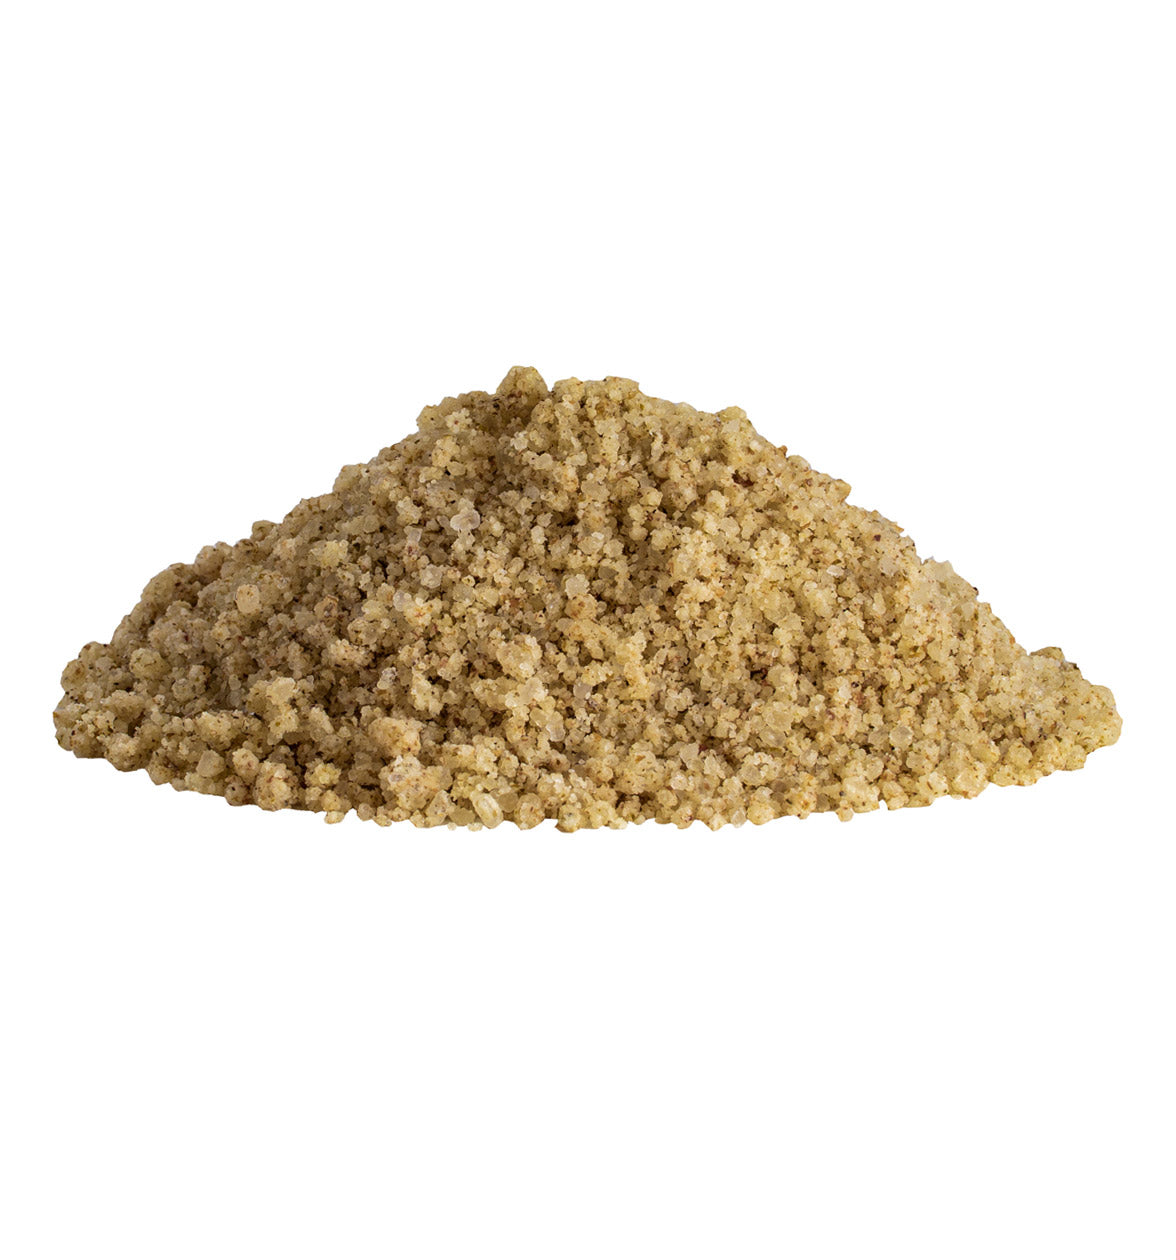 Seaweed OG Salt Soak CBD 500g 0 mg: 1000 mg